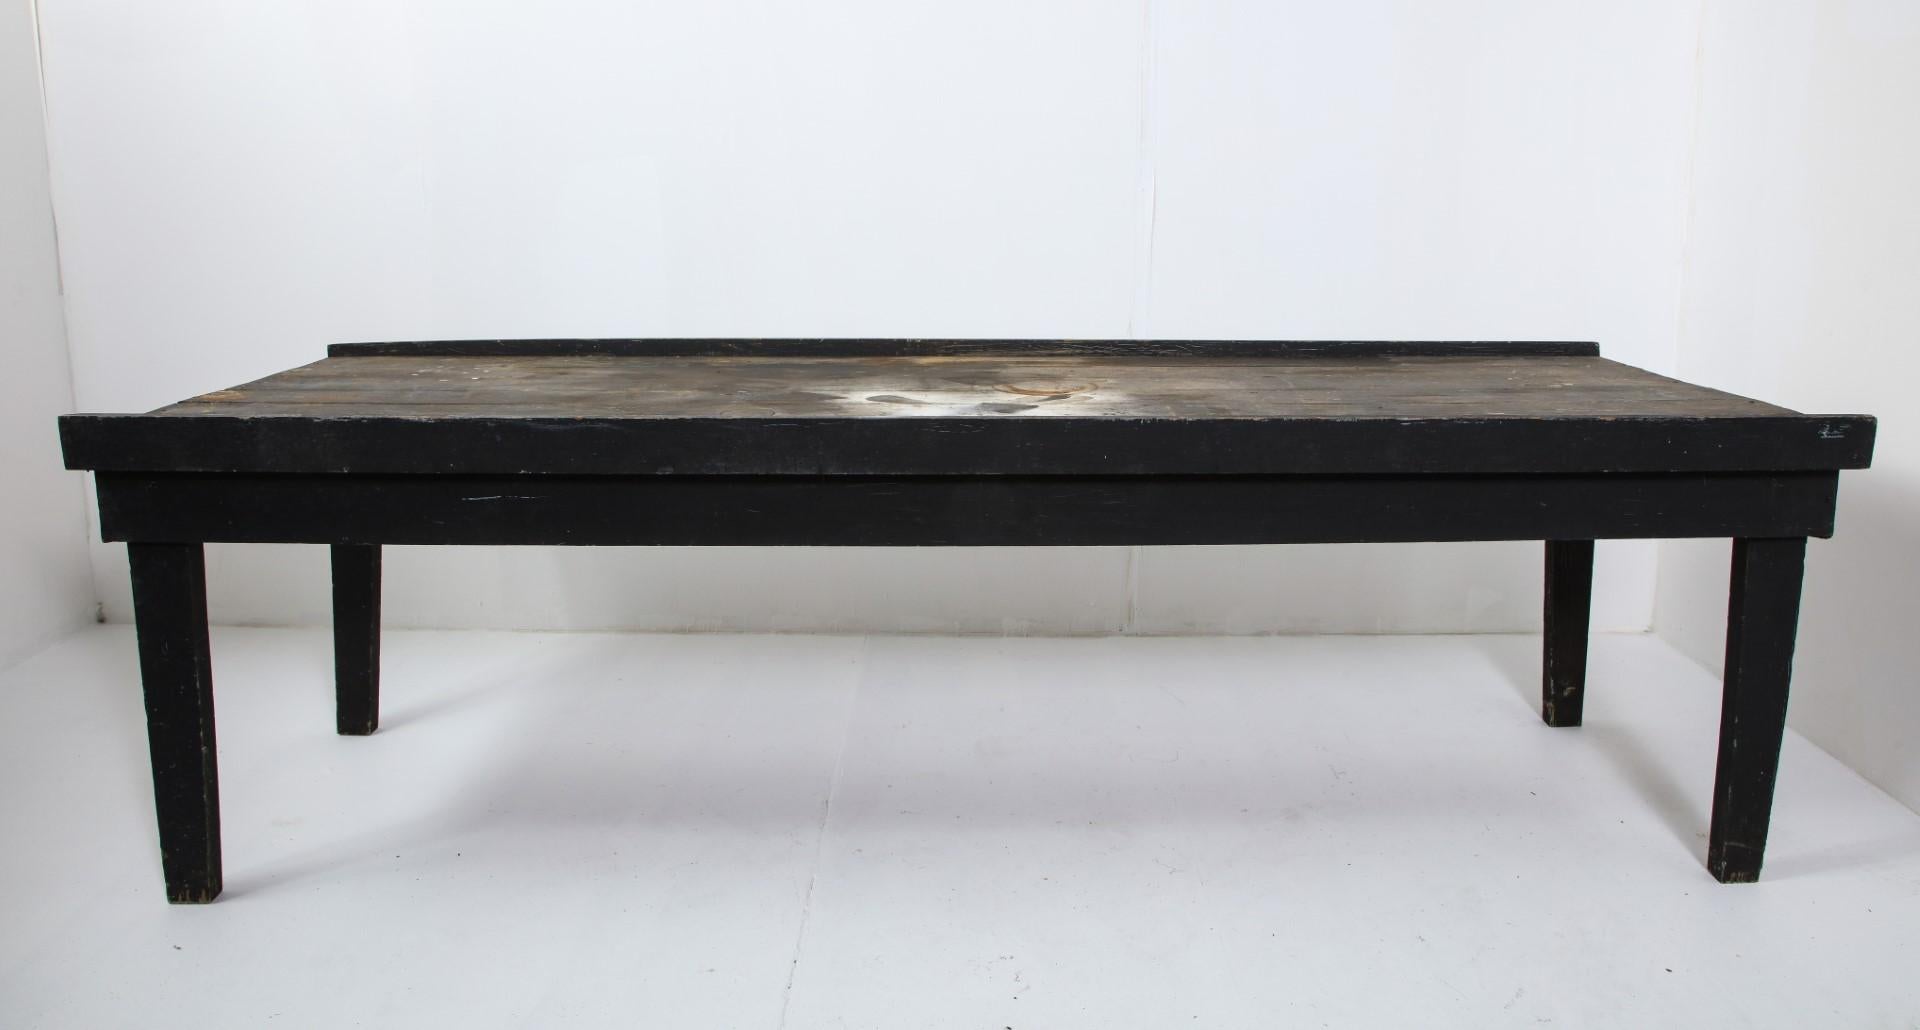 Table primitive américaine du début du 20e siècle en chêne peint en noir. Le dessus est marqué par des cercles d'eau, de la peinture en spray, une usure de surface. Idéal pour une table de travail ou un usage extérieur.